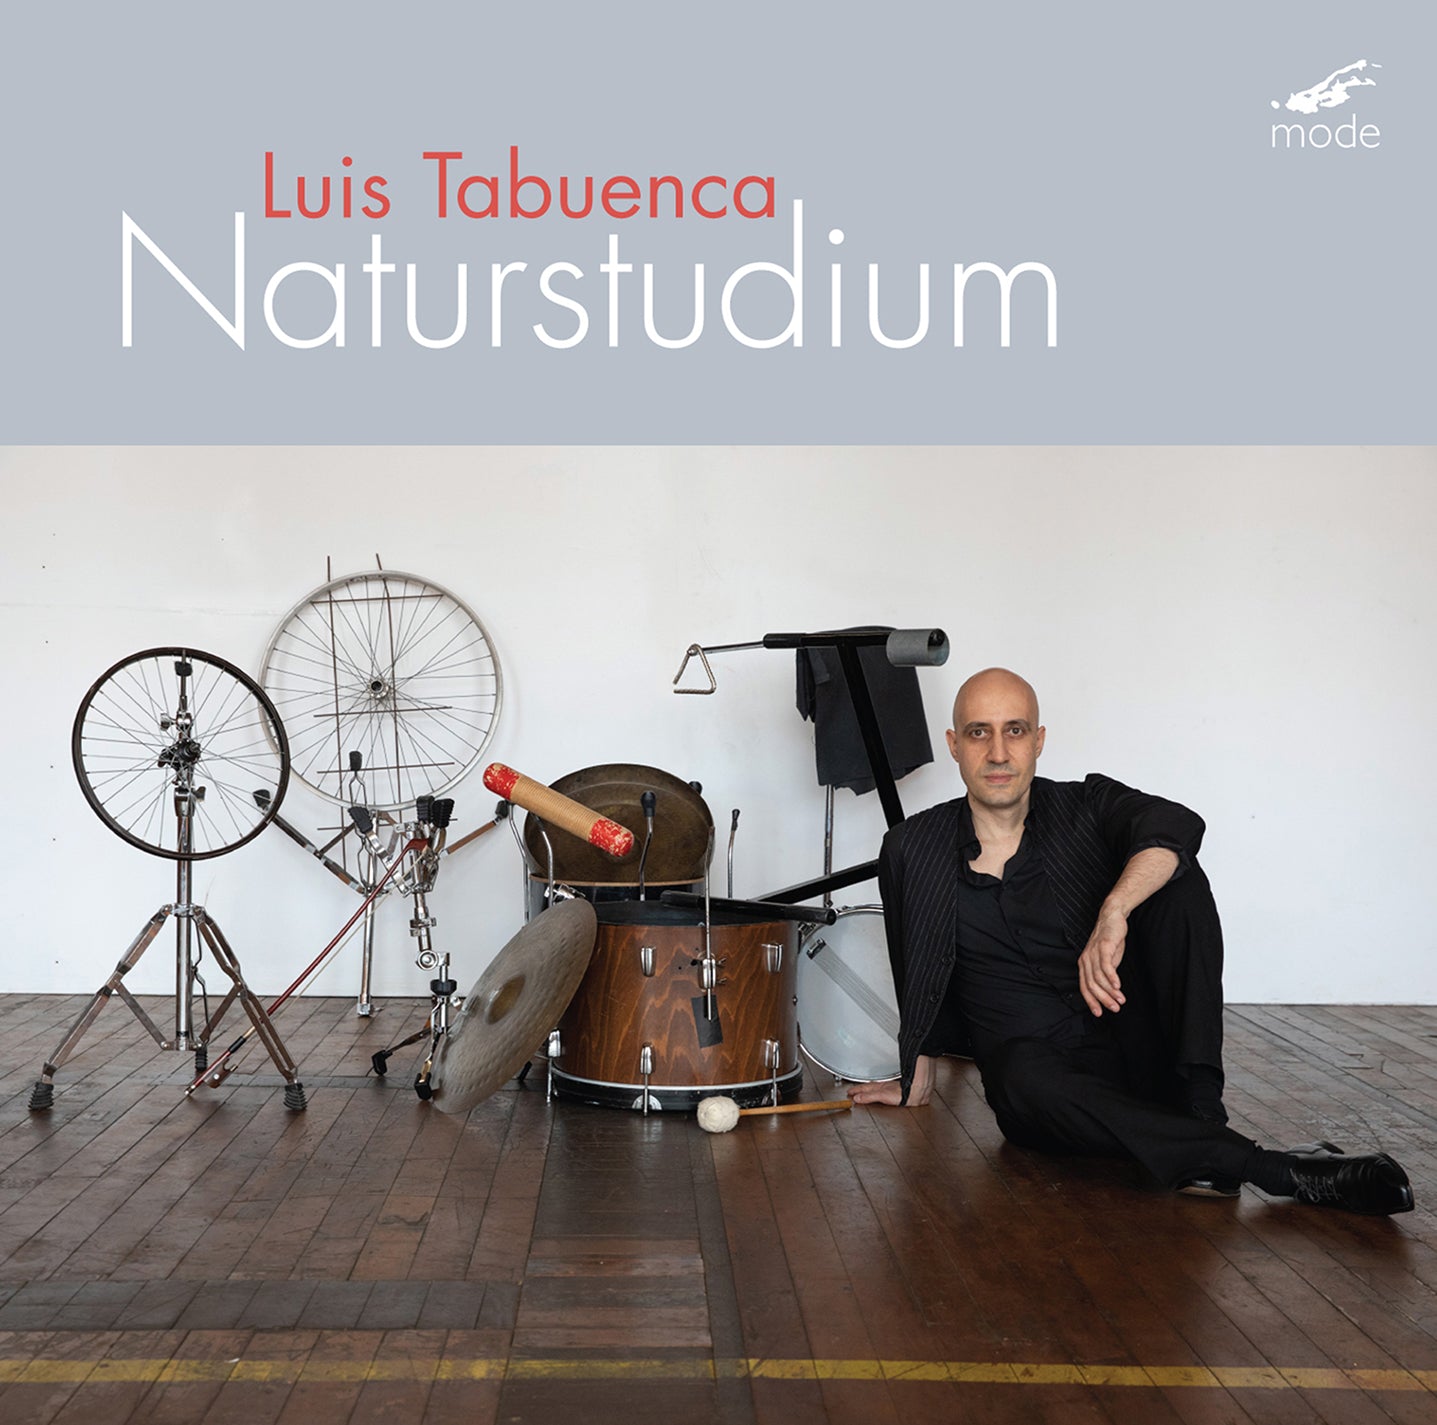 Luis Tabuenca: Naturstudium